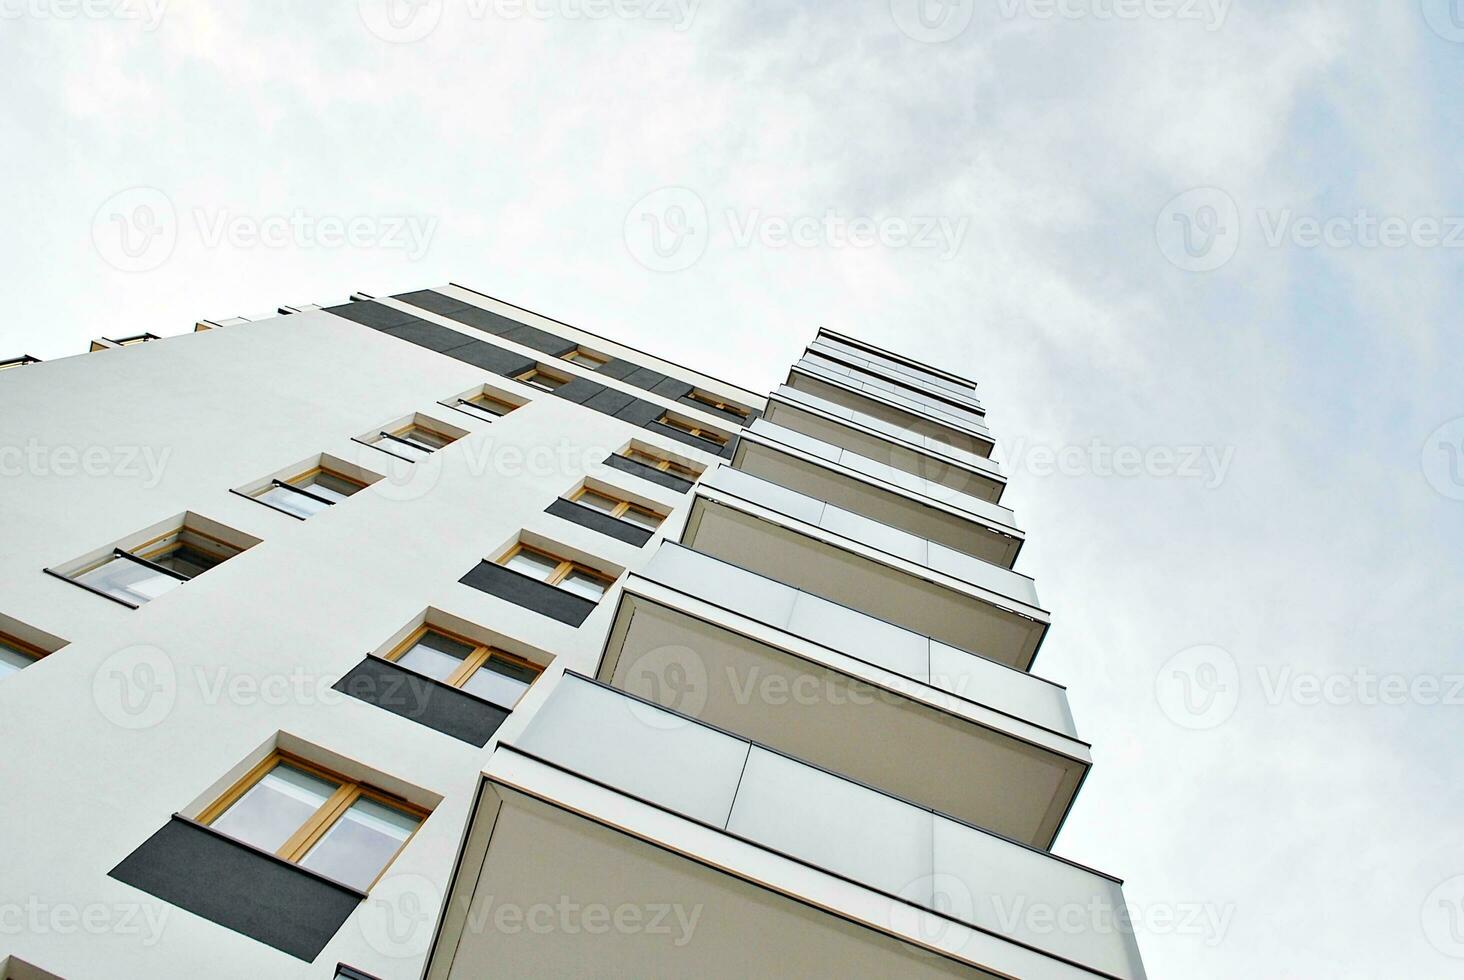 nouvel immeuble d'appartements avec balcons vitrés. maisons d'architecture moderne en bord de mer. grand vitrage sur la façade du bâtiment. photo